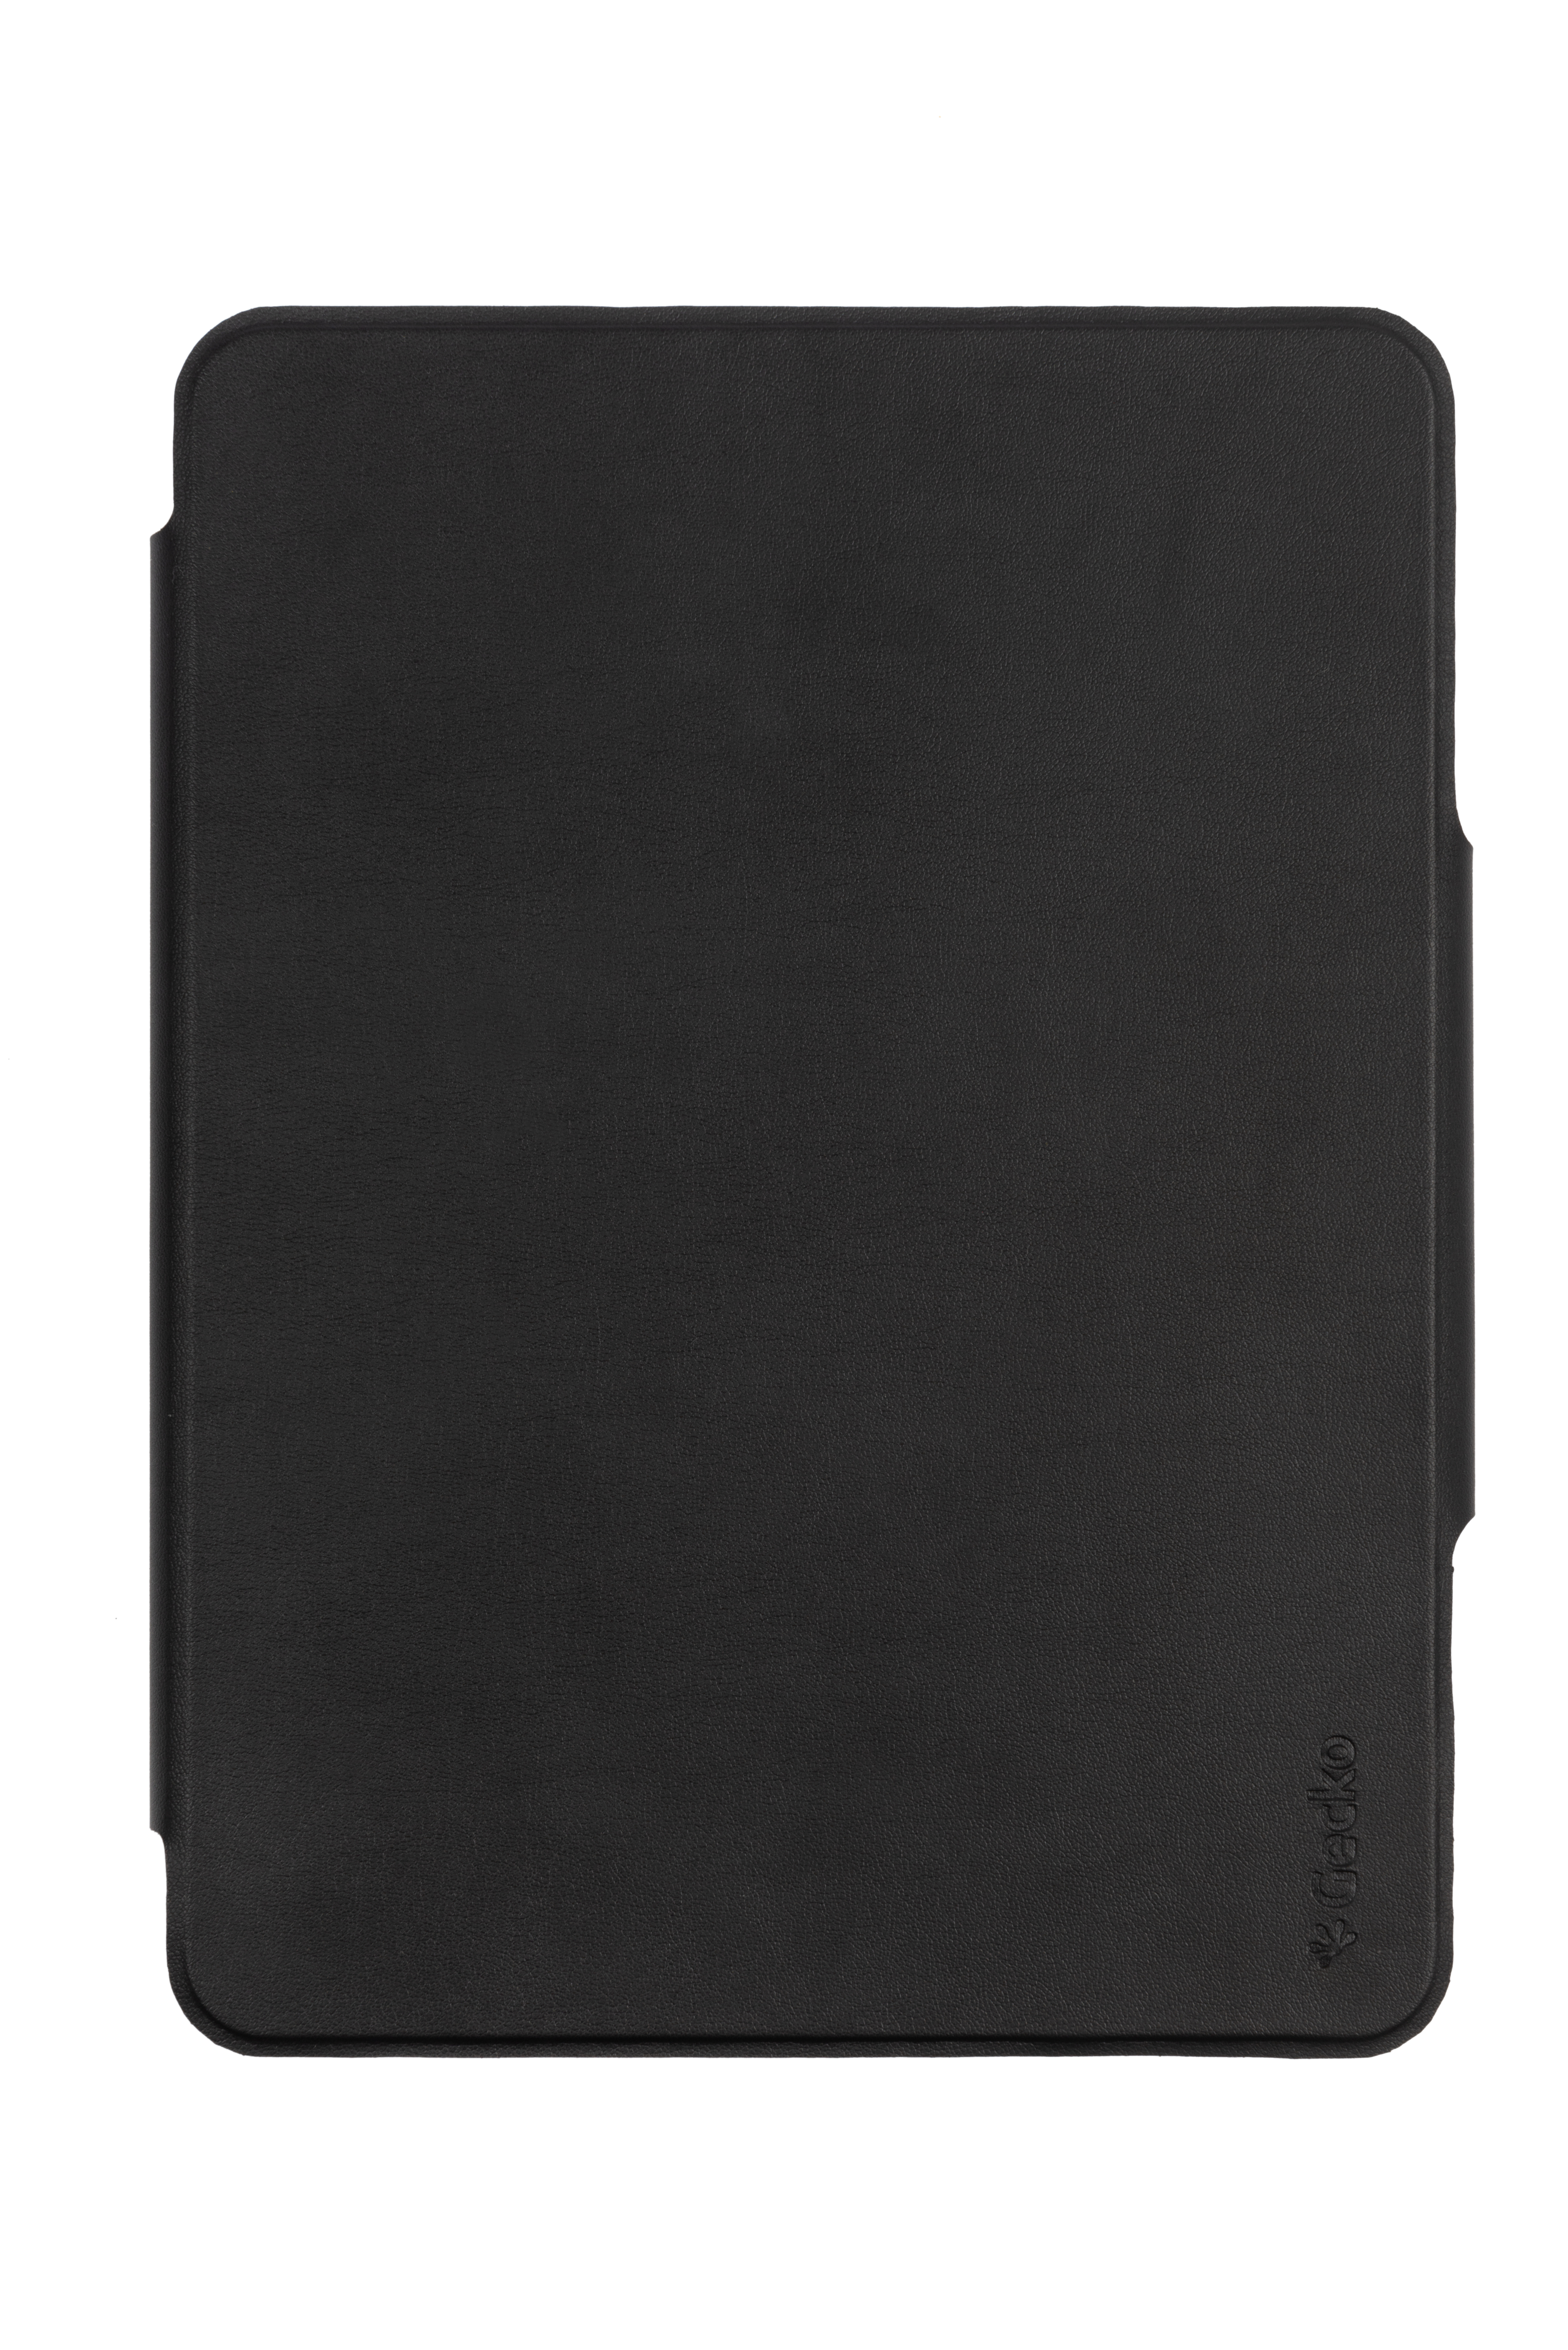 QWERTZ Tastatur-Case Bookcover Schwarz PU GECKO COVERS Apple Leather, für